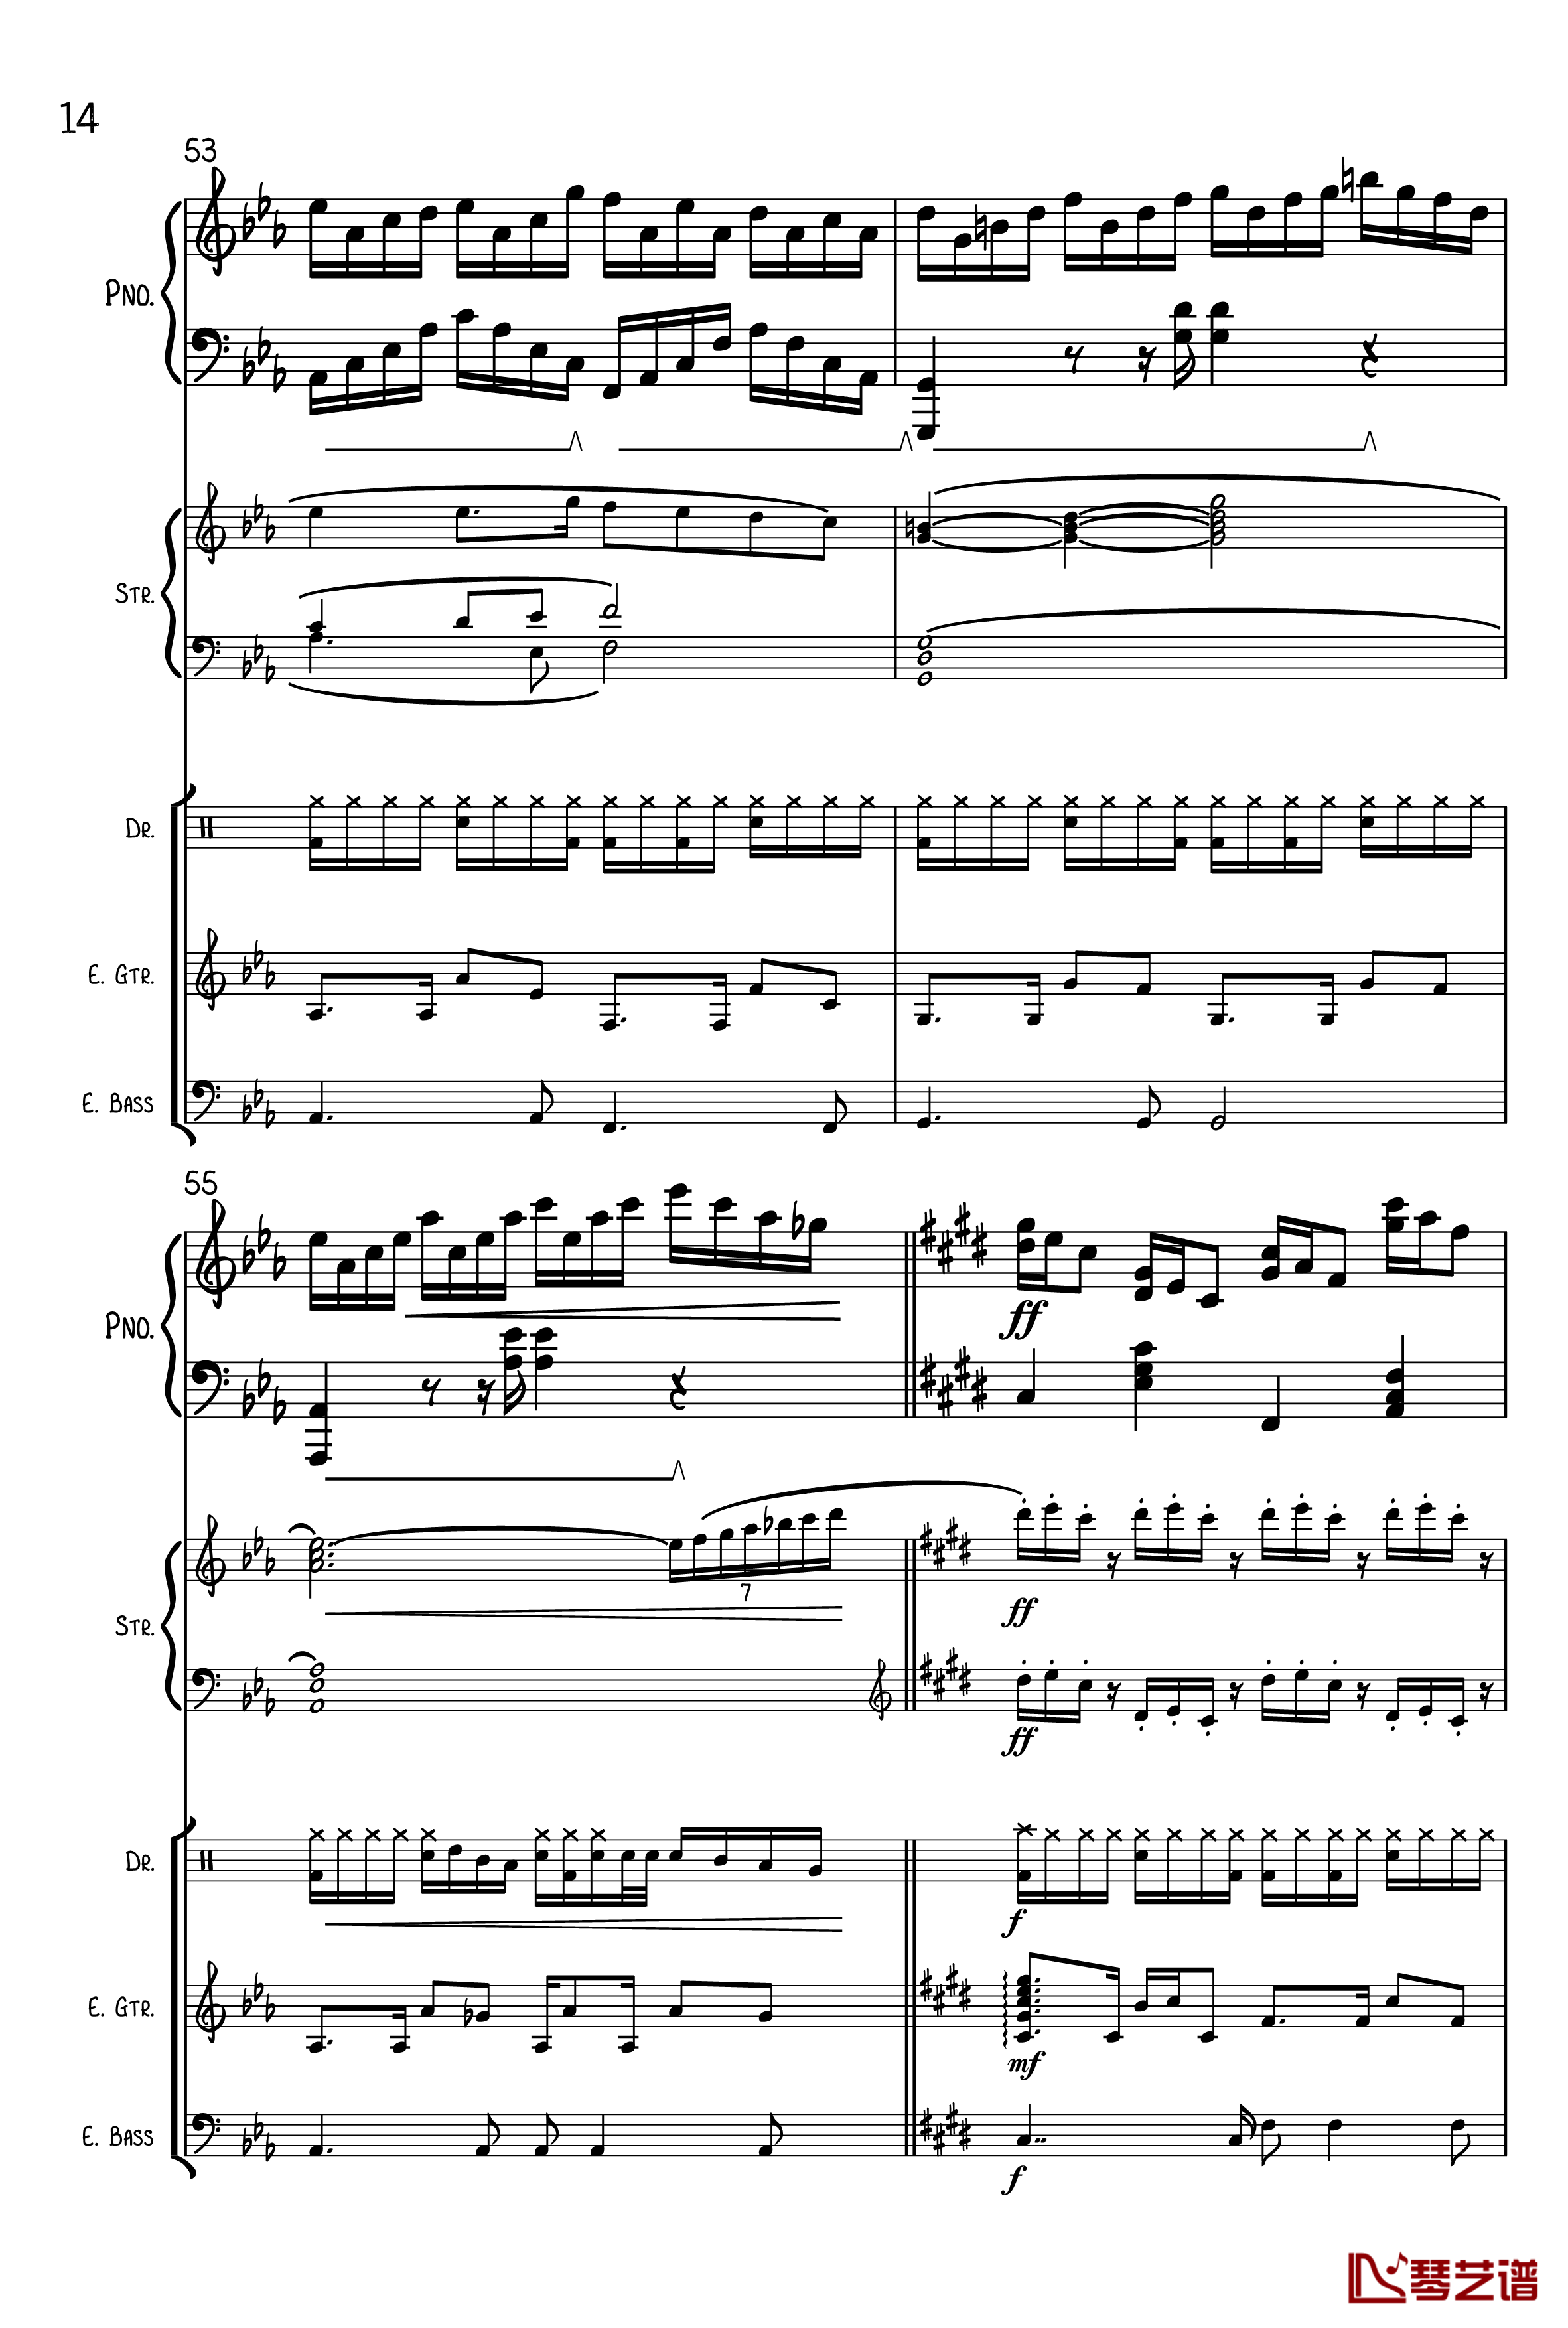 克罗地亚狂想曲钢琴谱-总谱-马克西姆-Maksim·Mrvica14